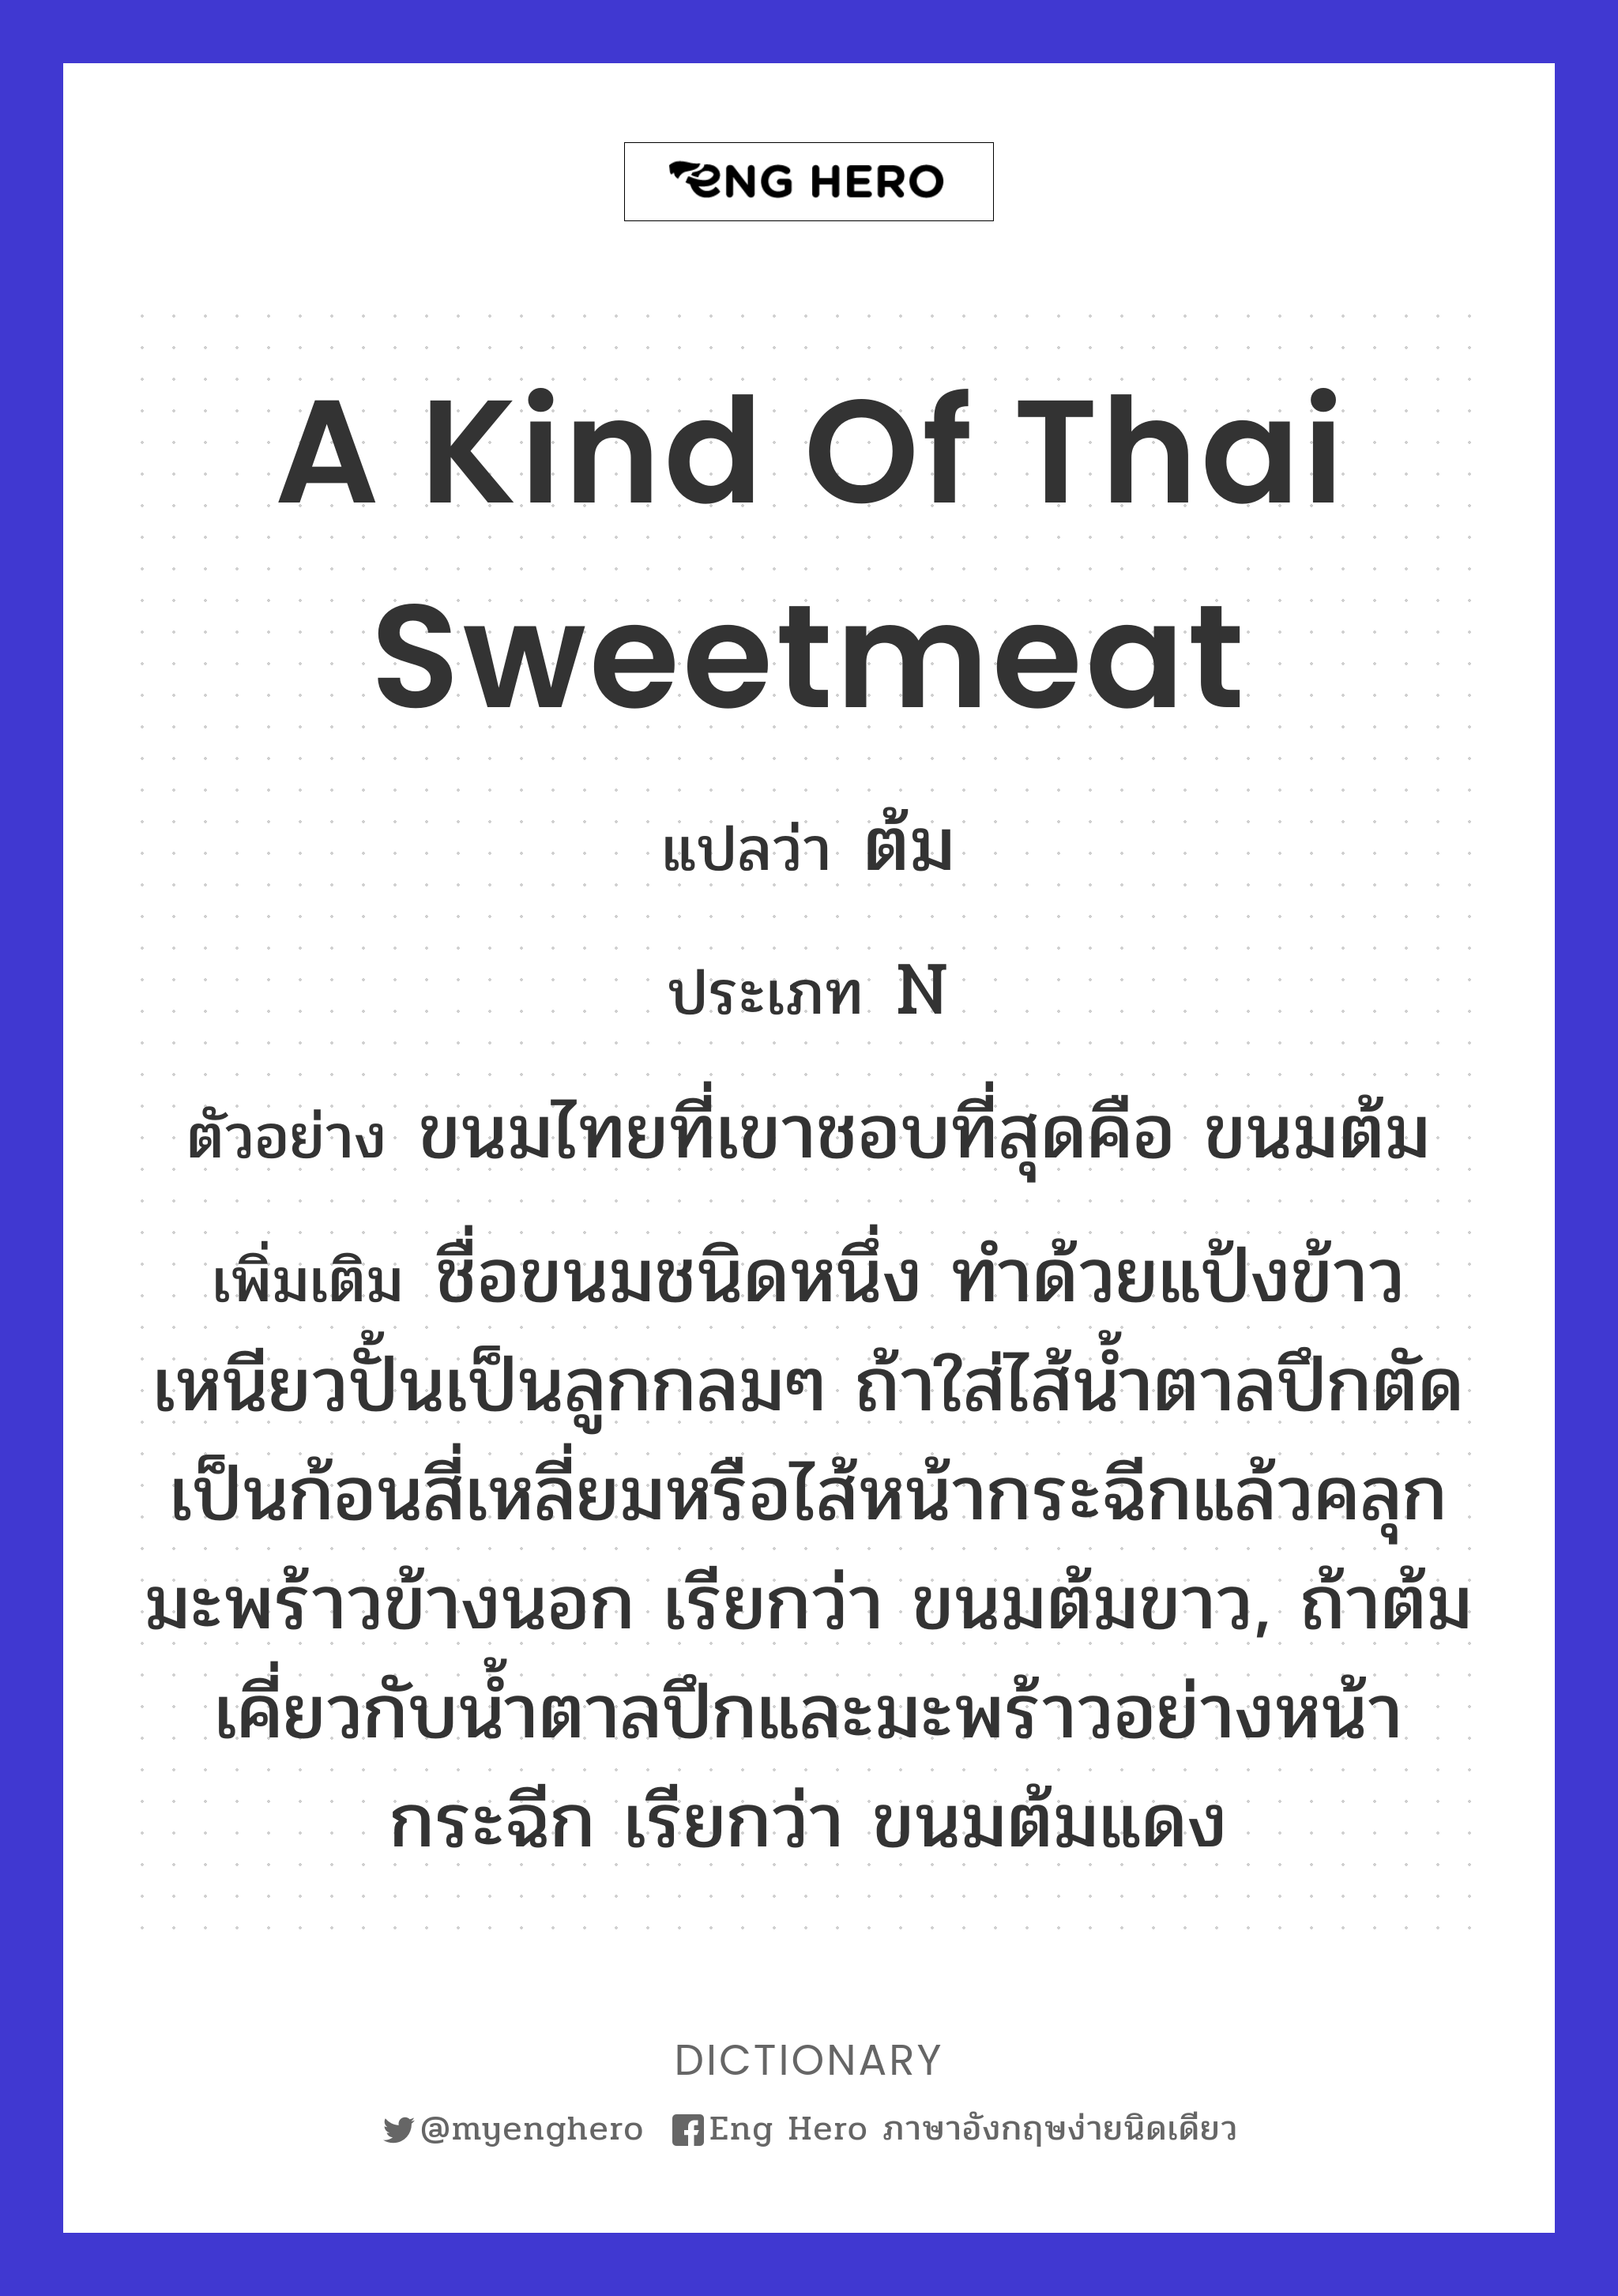 a kind of Thai sweetmeat